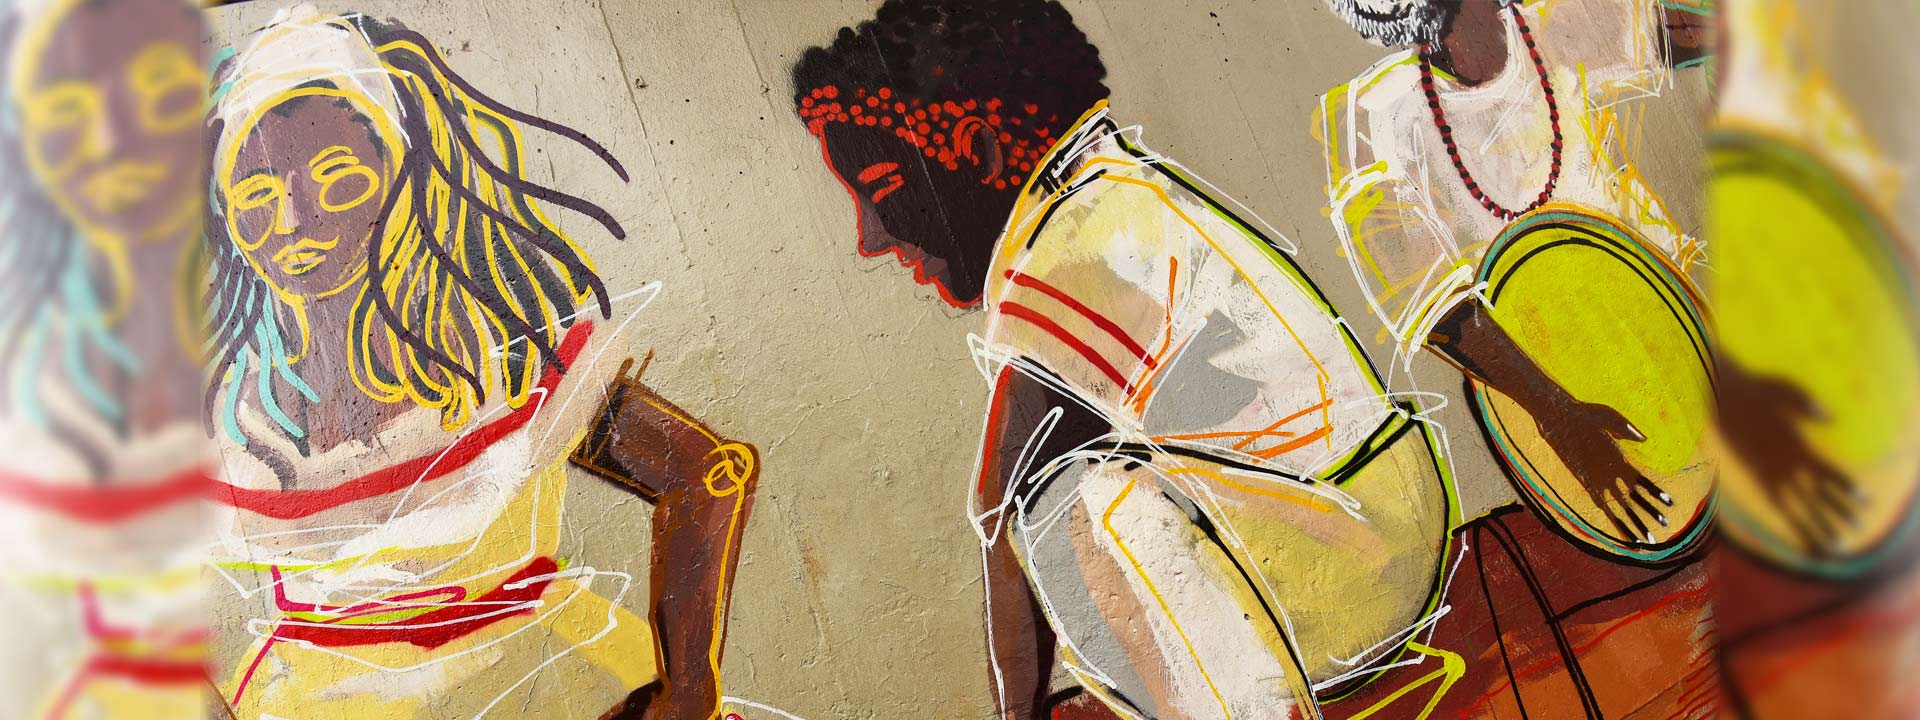 Grafite "Africanidades" produzido no Teatro de Arena, Ciclo Básico